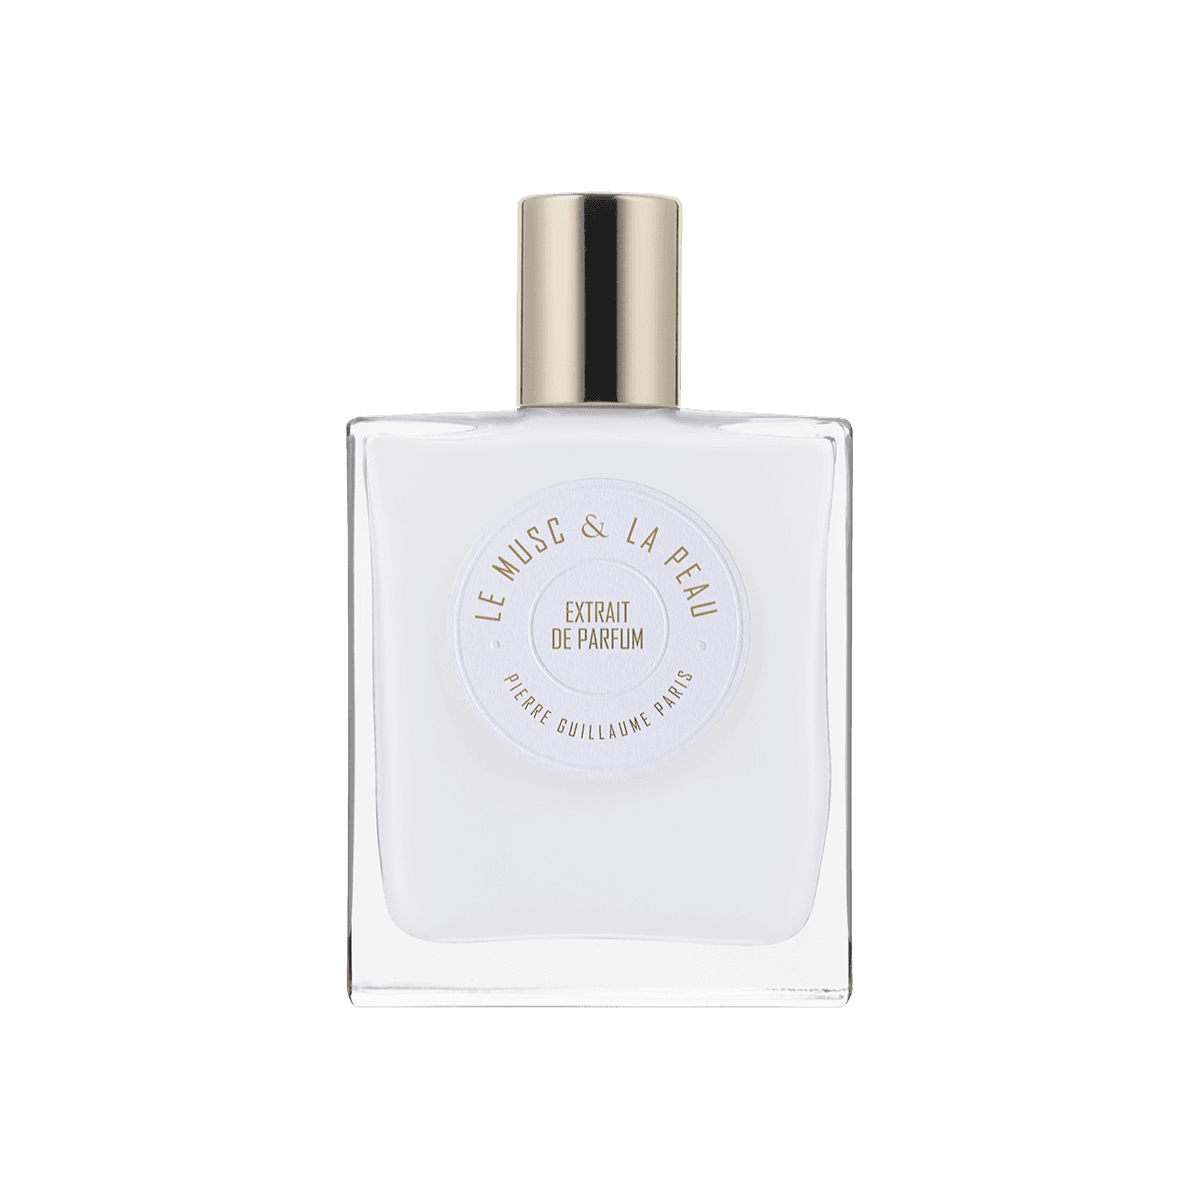 Pierre Guillaume Paris - Le Musc & La Peau Extrait de Parfum 50 ml